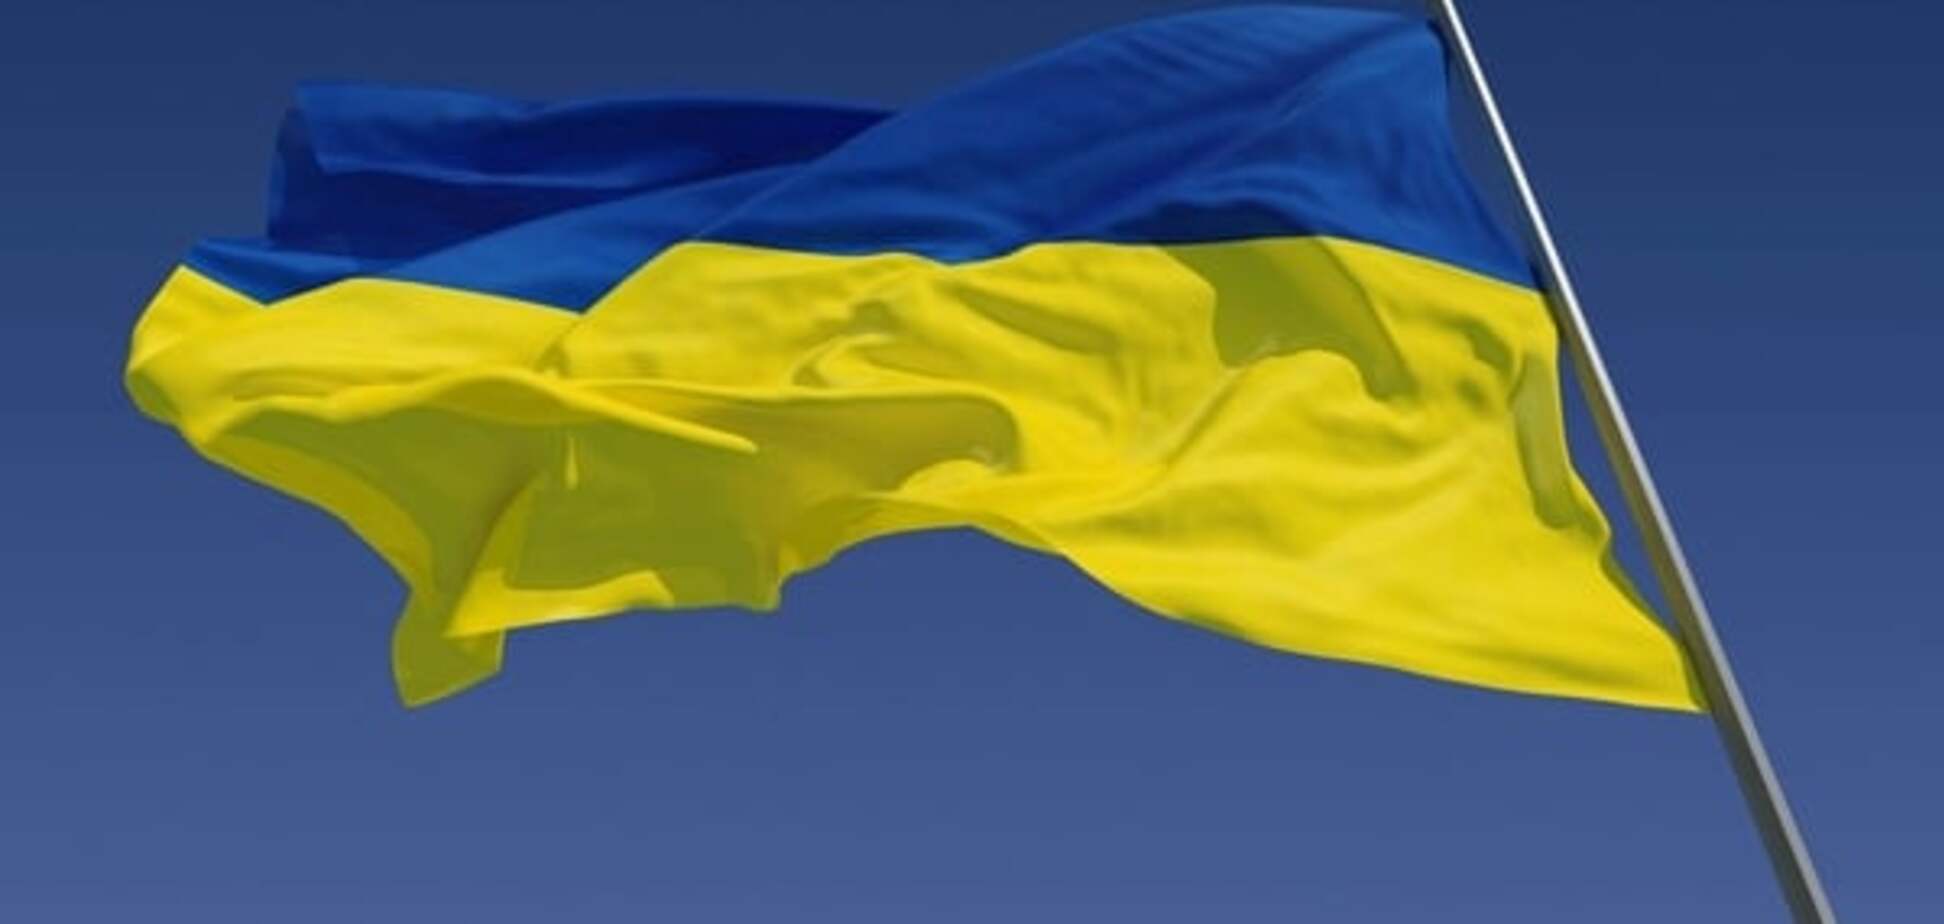 Дуже повільно! В Україні зріє невдоволення реформами - опитування